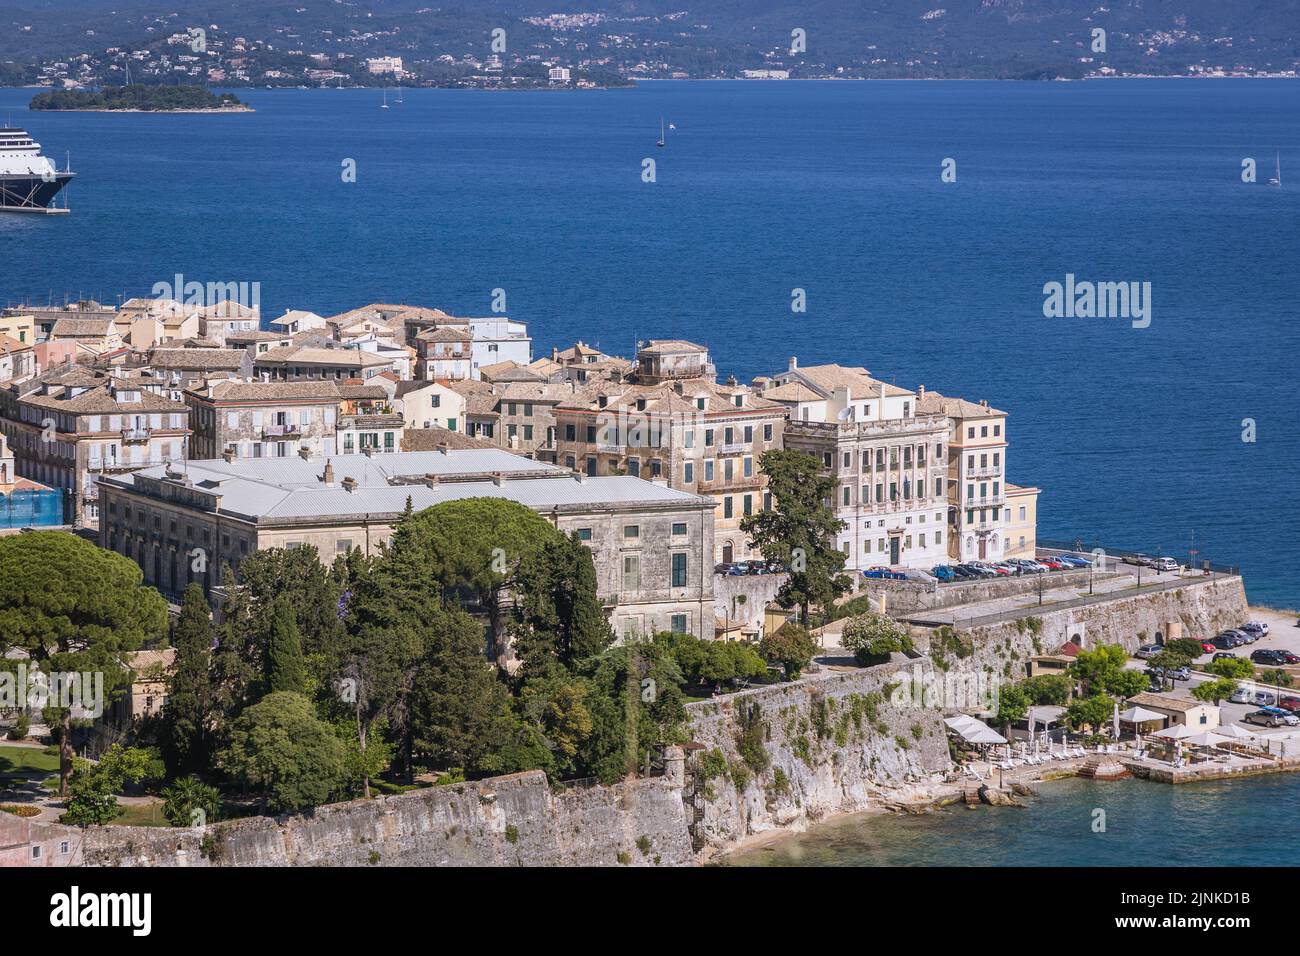 Vista aerea dall'antica fortezza veneziana nella città di Corfù, su un'isola greca di Corfù Foto Stock